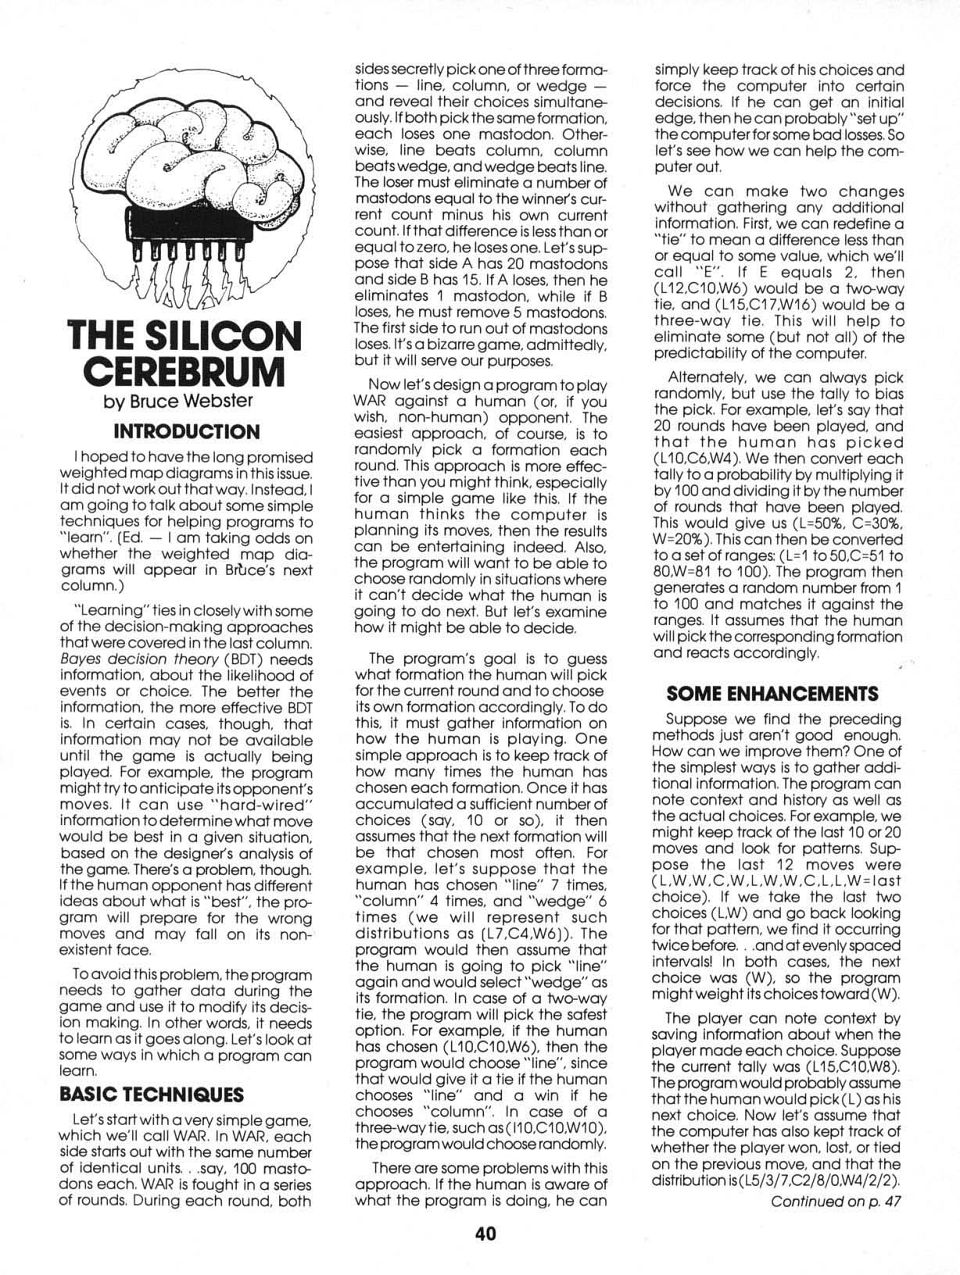 The Silicon Cerebrum